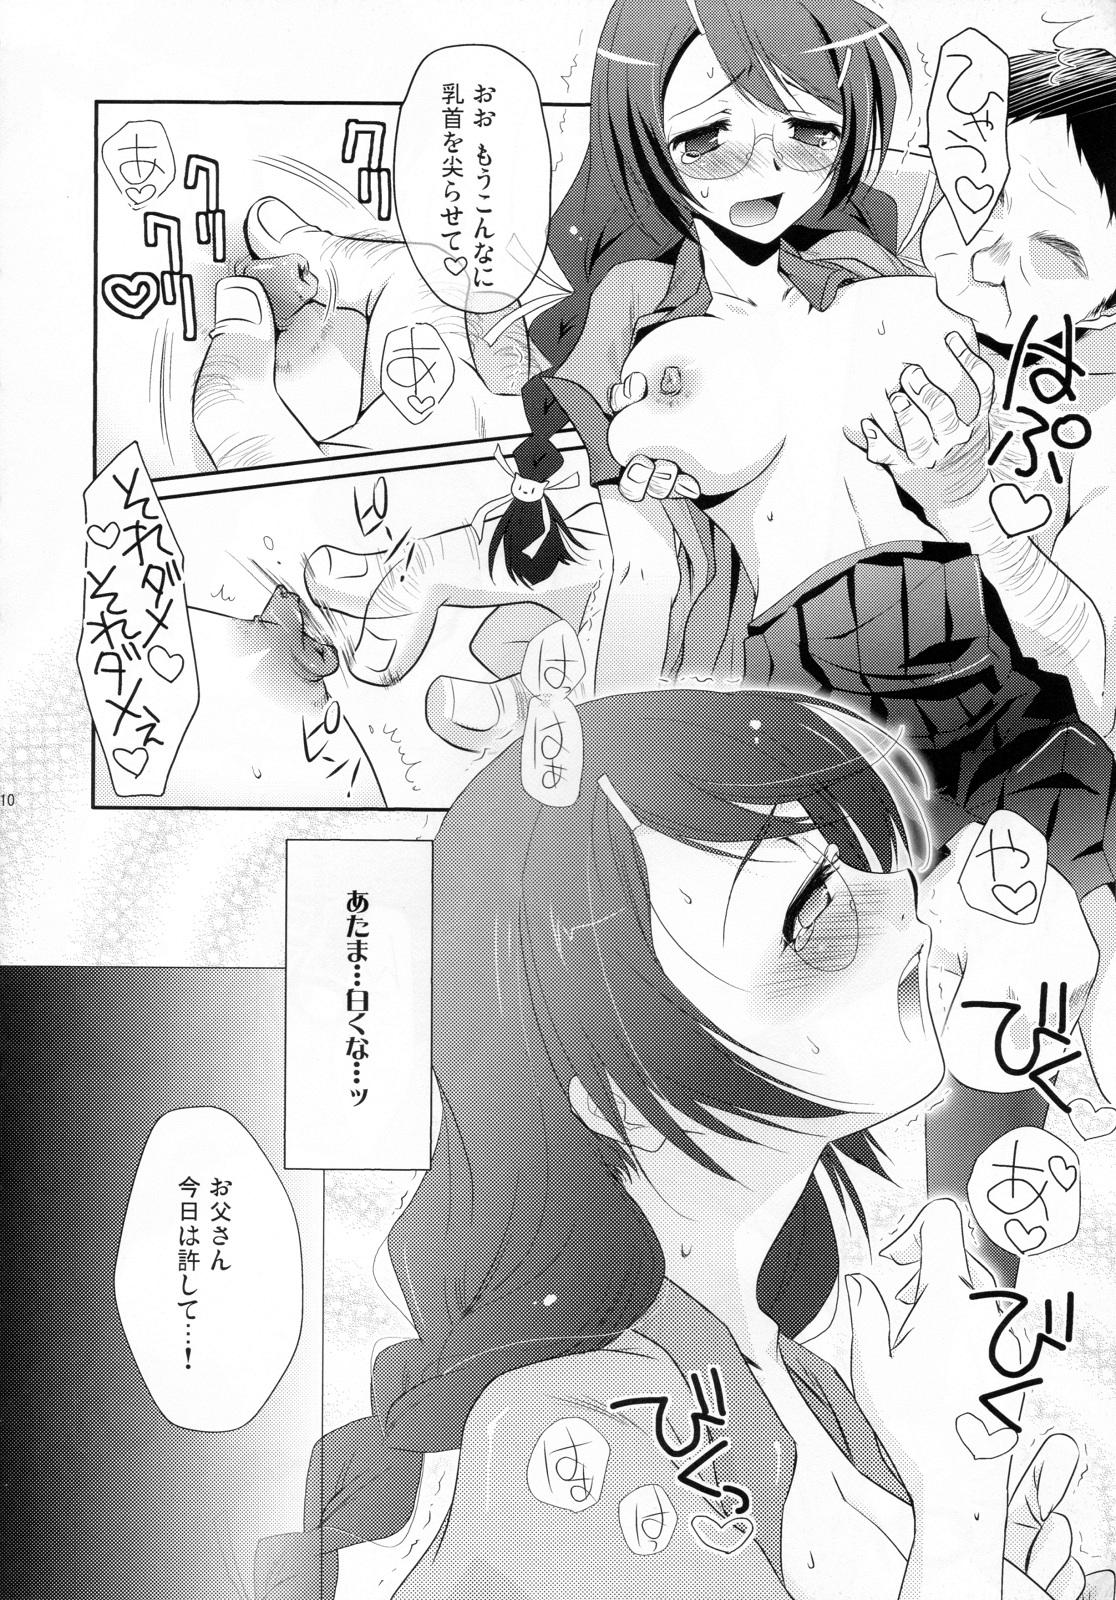 Teenage Neko no inu ma ni Nezumi wa Odoru - Bakemonogatari Internal - Page 10